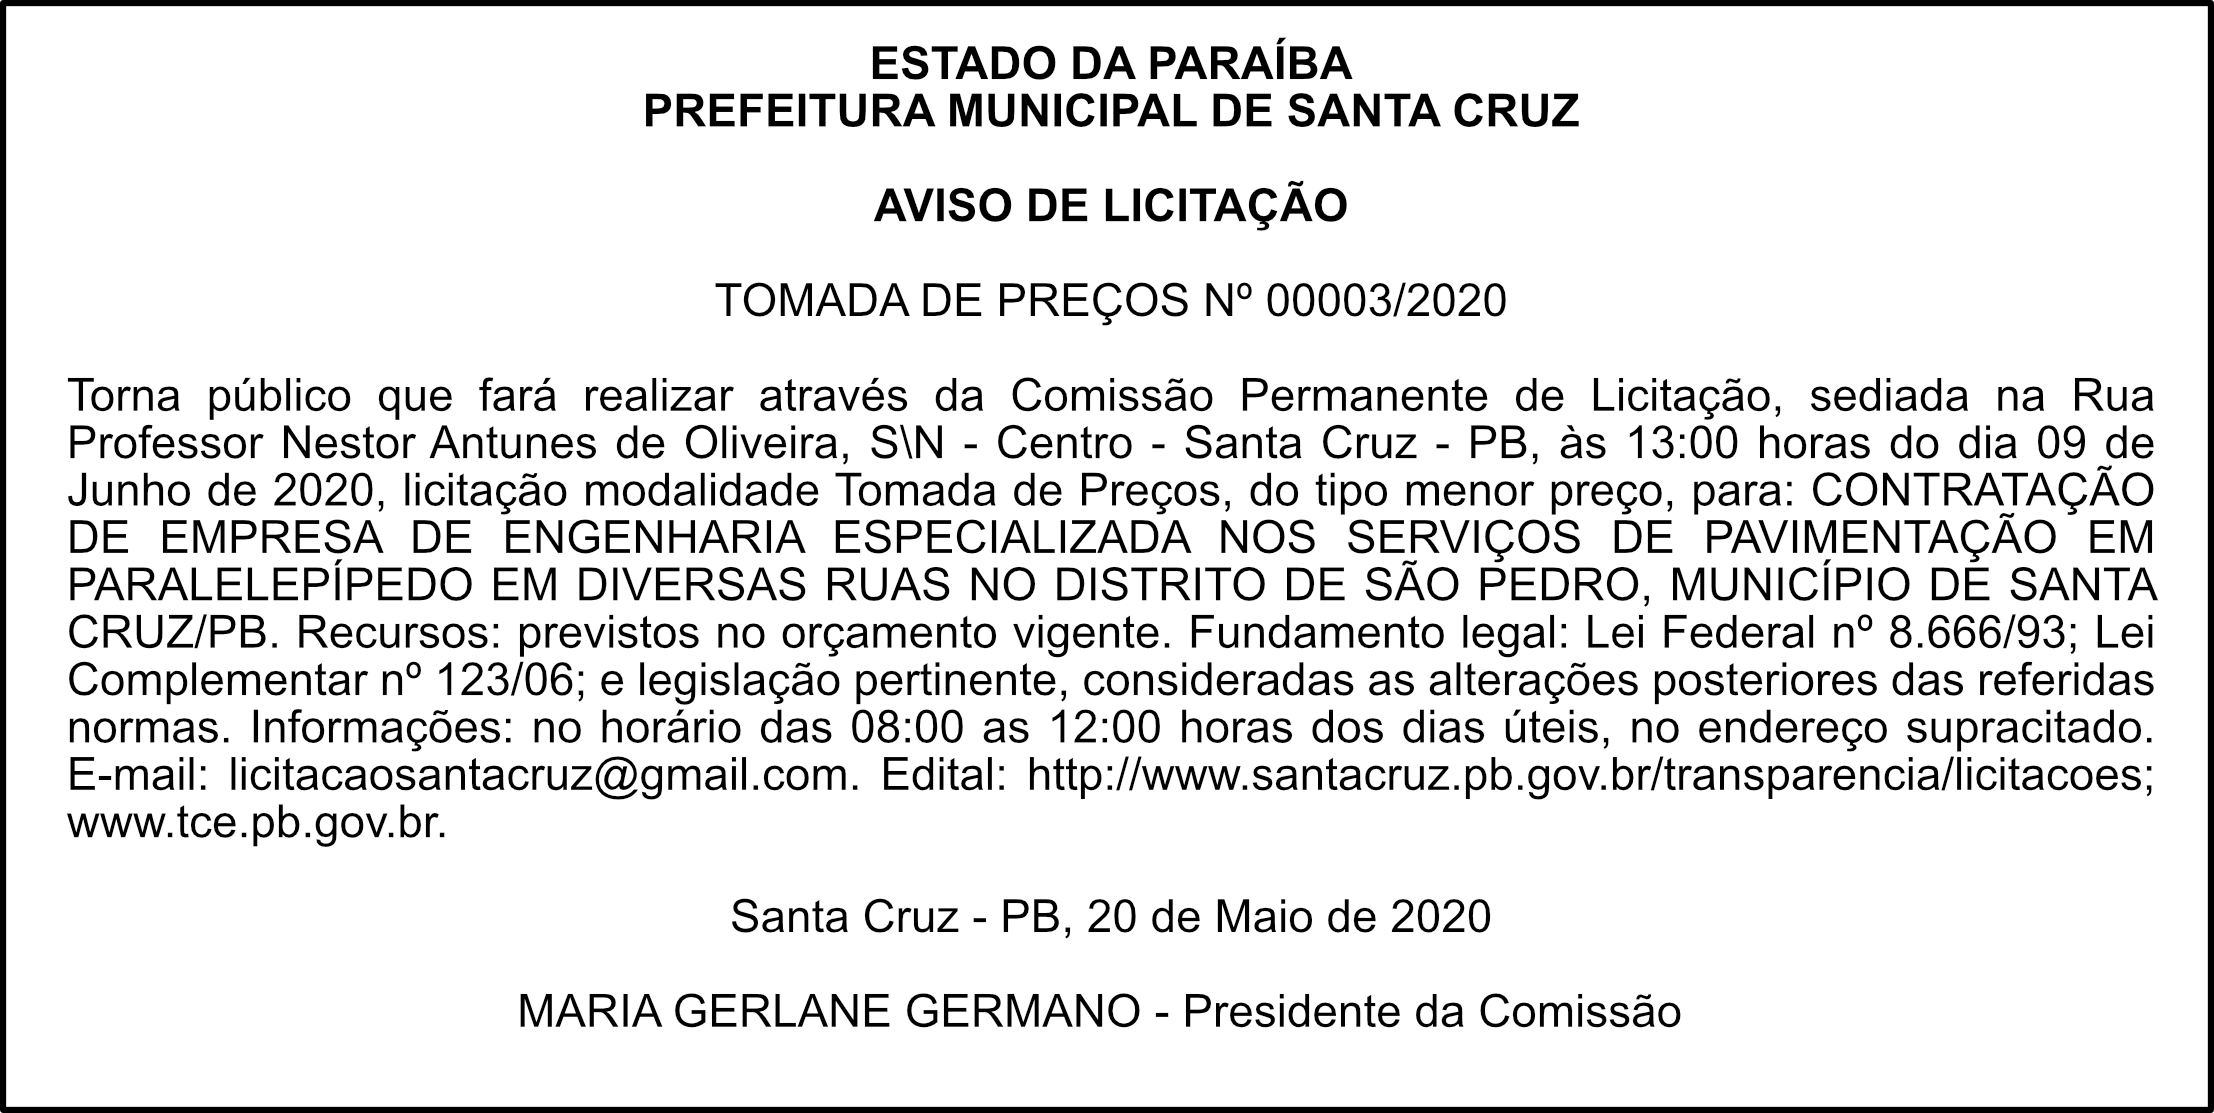 PREFEITURA MUNICIPAL DE SANTA CRUZ – AVISO DE LICITAÇÃO – TOMADA DE PREÇOS Nº 00003/2020